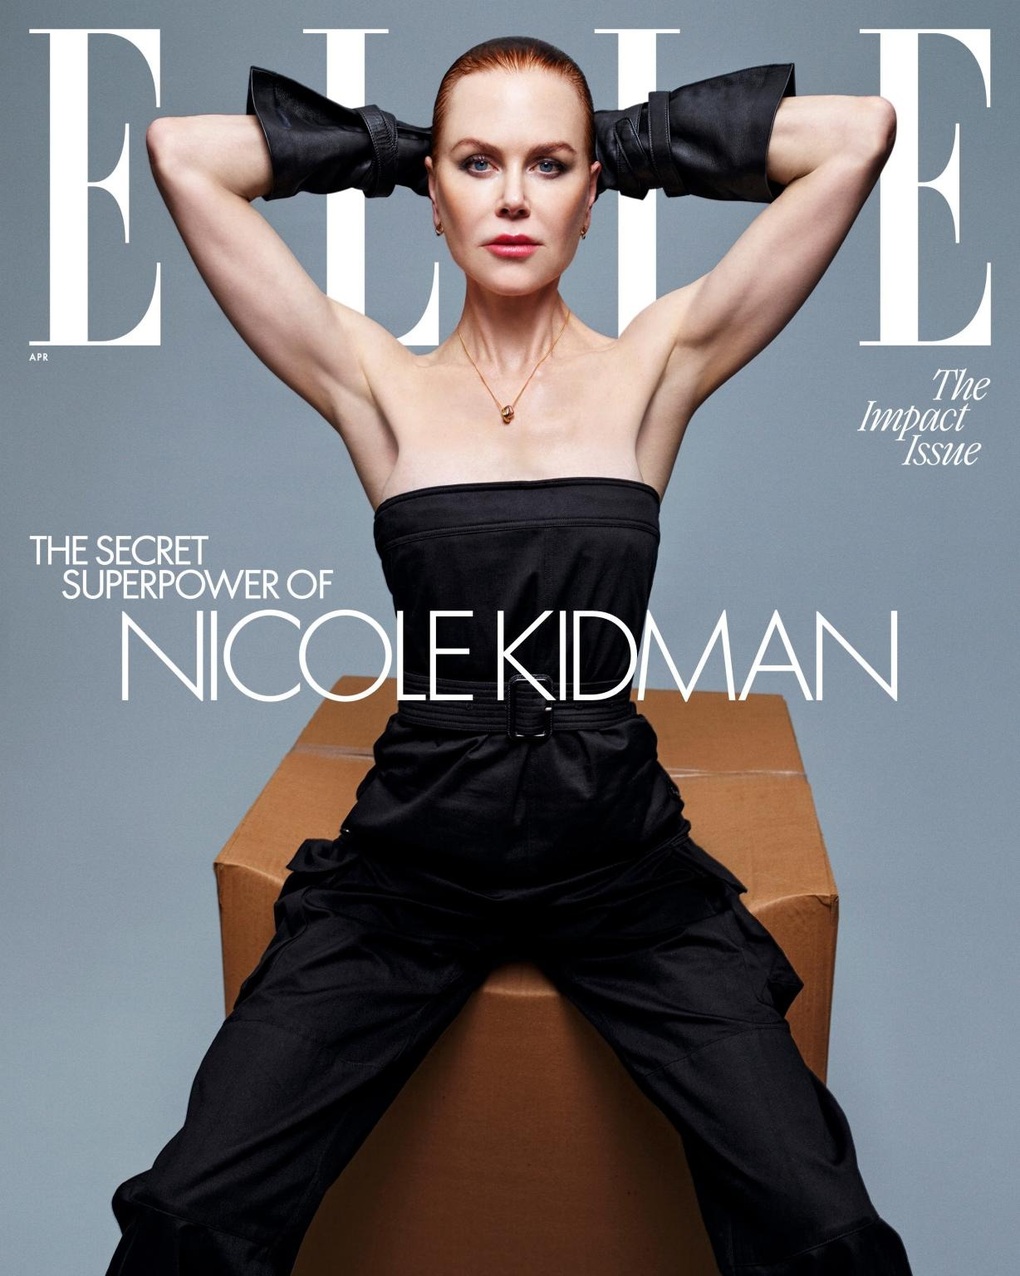 Nicole Kidman khoe cơ bắp và vóc dáng siêu thực ở tuổi 56 - 6